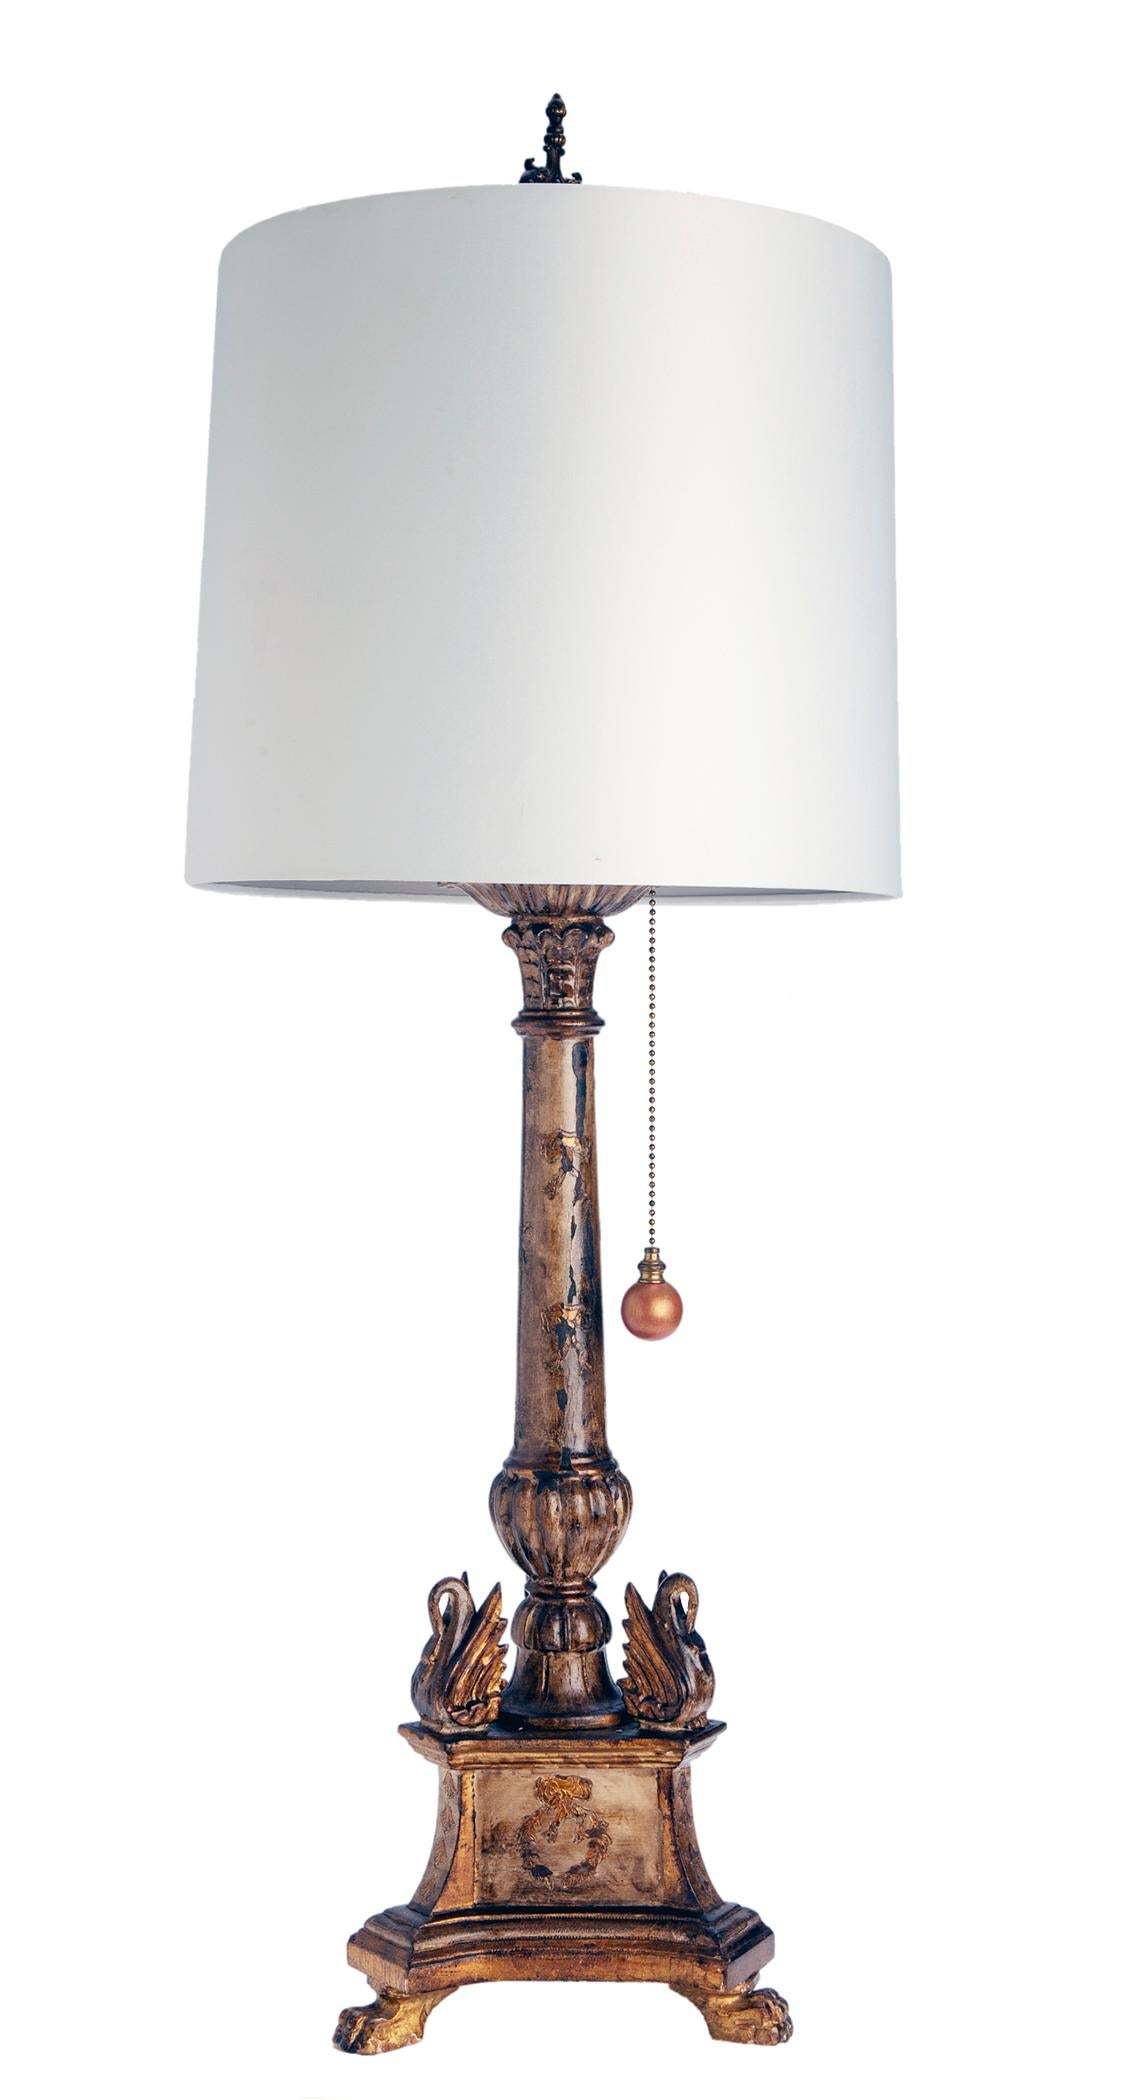 Charmante paire de lampes chandelier Florentine italienne vintage avec des bases en bois sculpté avec une finition peinte et dorée d'origine.
Longue chaîne de perles en laiton avec des tirettes à grosses perles très conviviales et